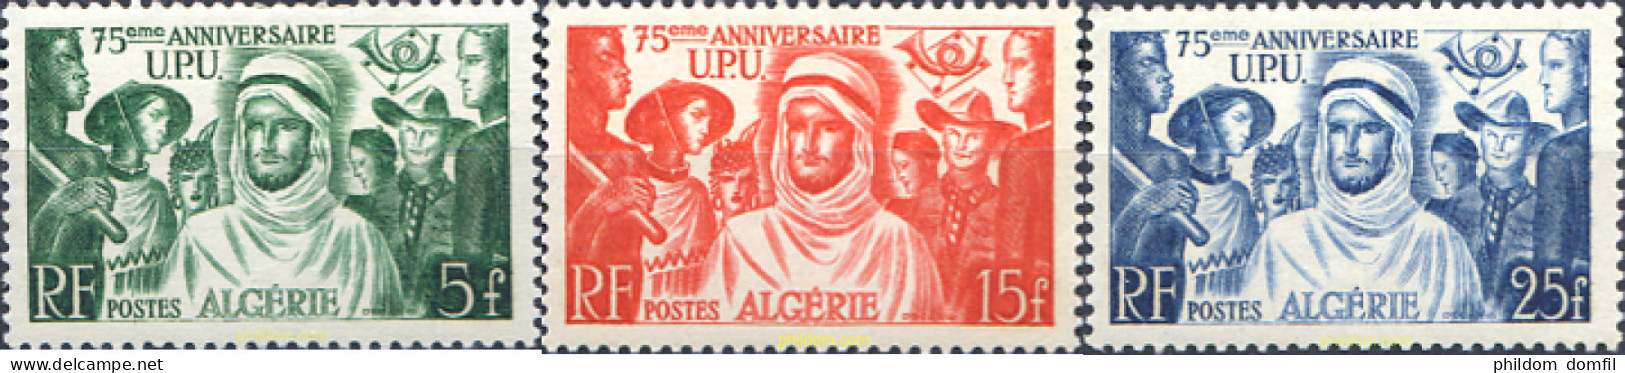 343182 HINGED ARGELIA 1949 75 ANIVERSARIO DE LA UNION POSTAL UNIVERSAL - Algerien (1962-...)